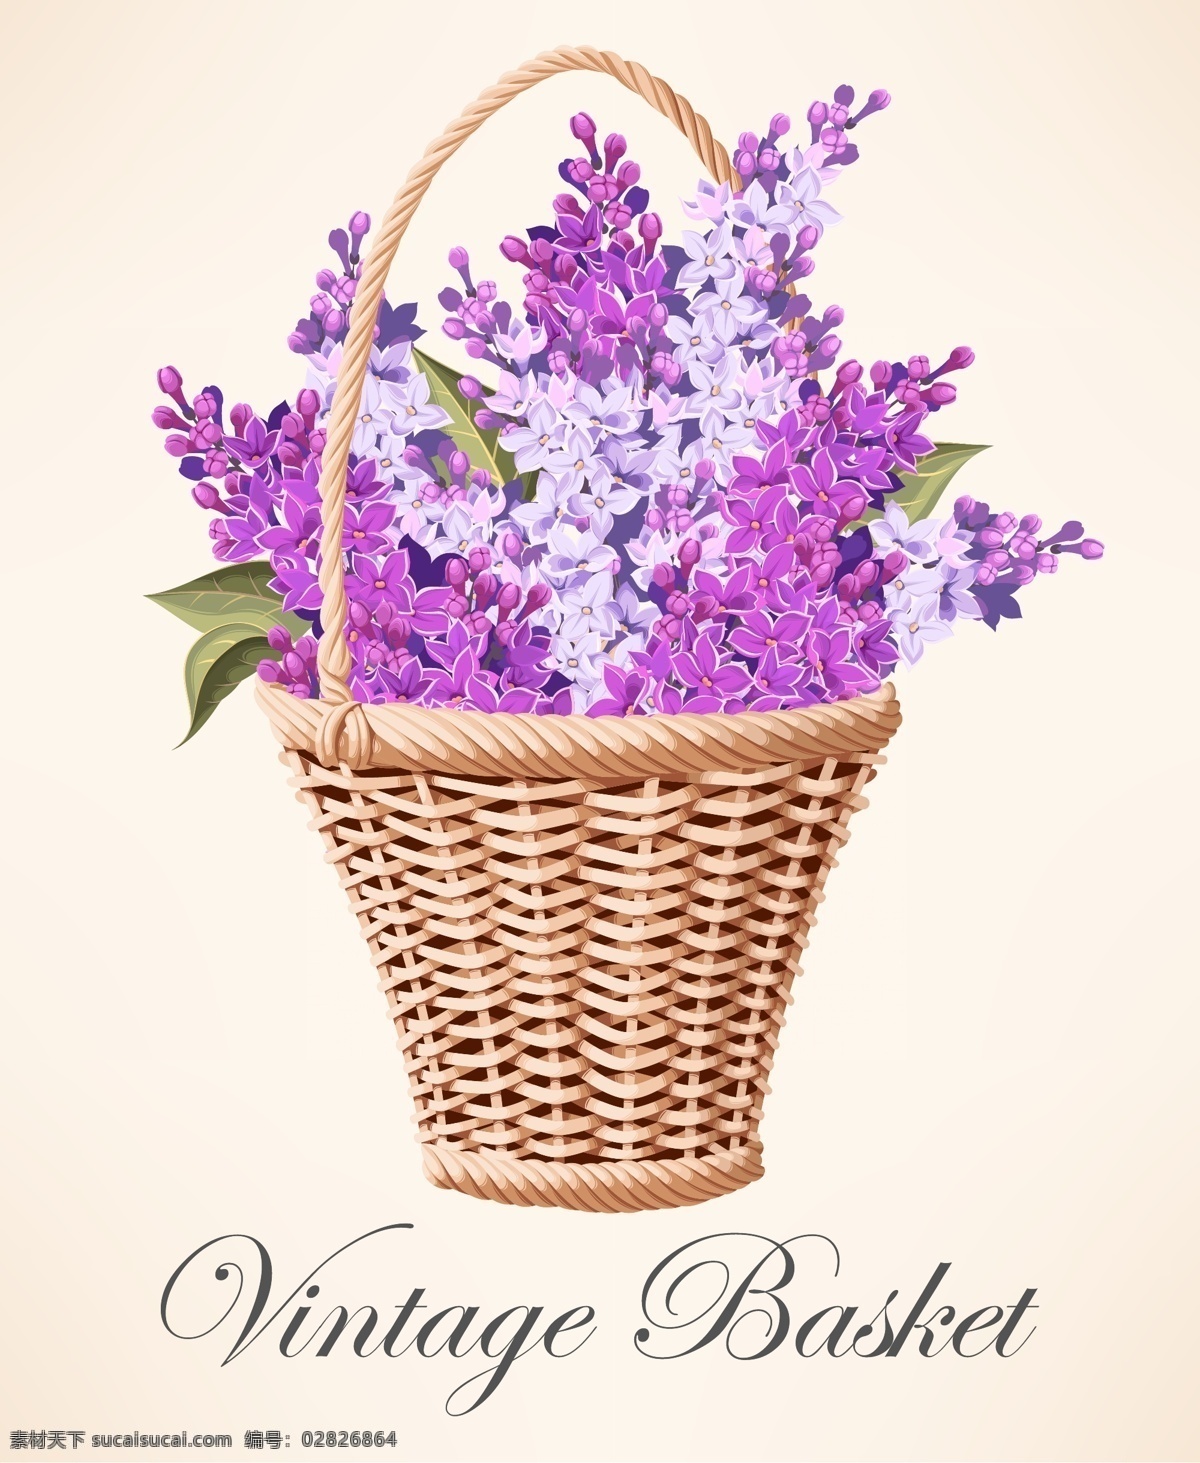 一篮子紫罗兰 花朵 篮子 植物 紫罗兰